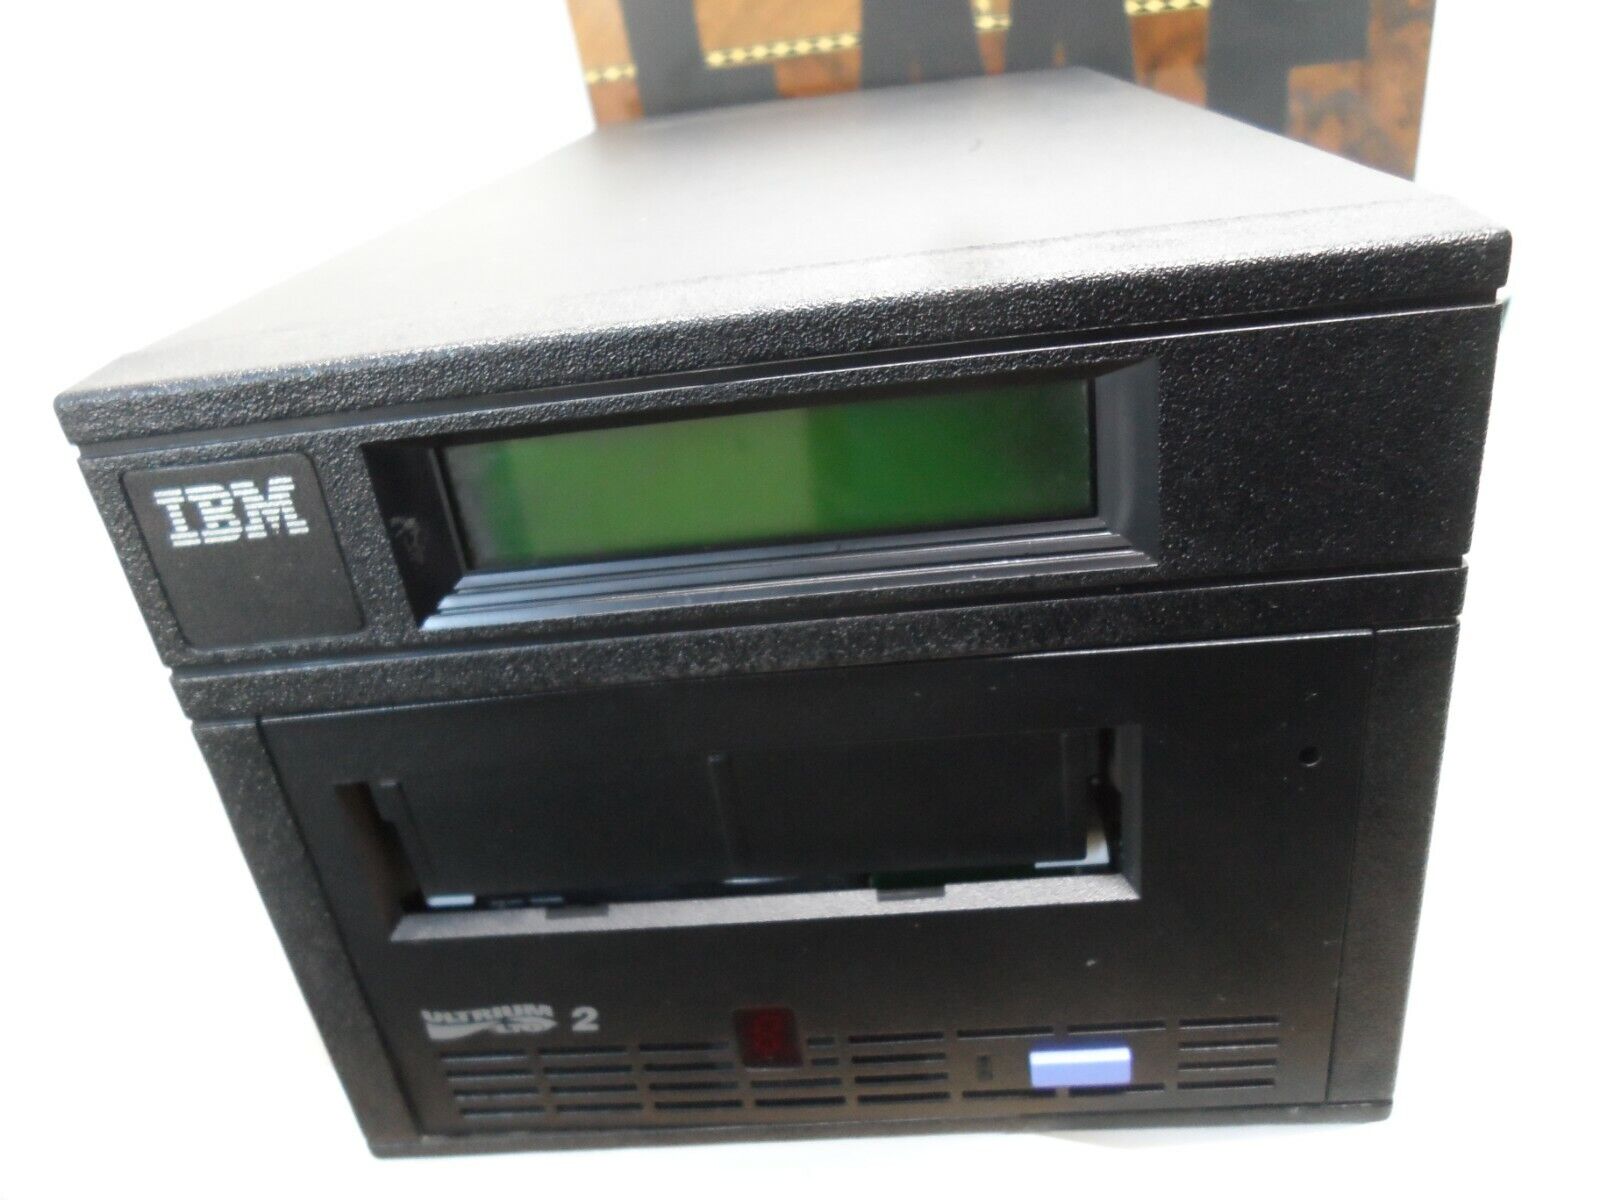 USED IBM 3580-H23 3580H23 LTO2 Ultrium2 SCSI HVD External Tape Drive HVD-SCSI